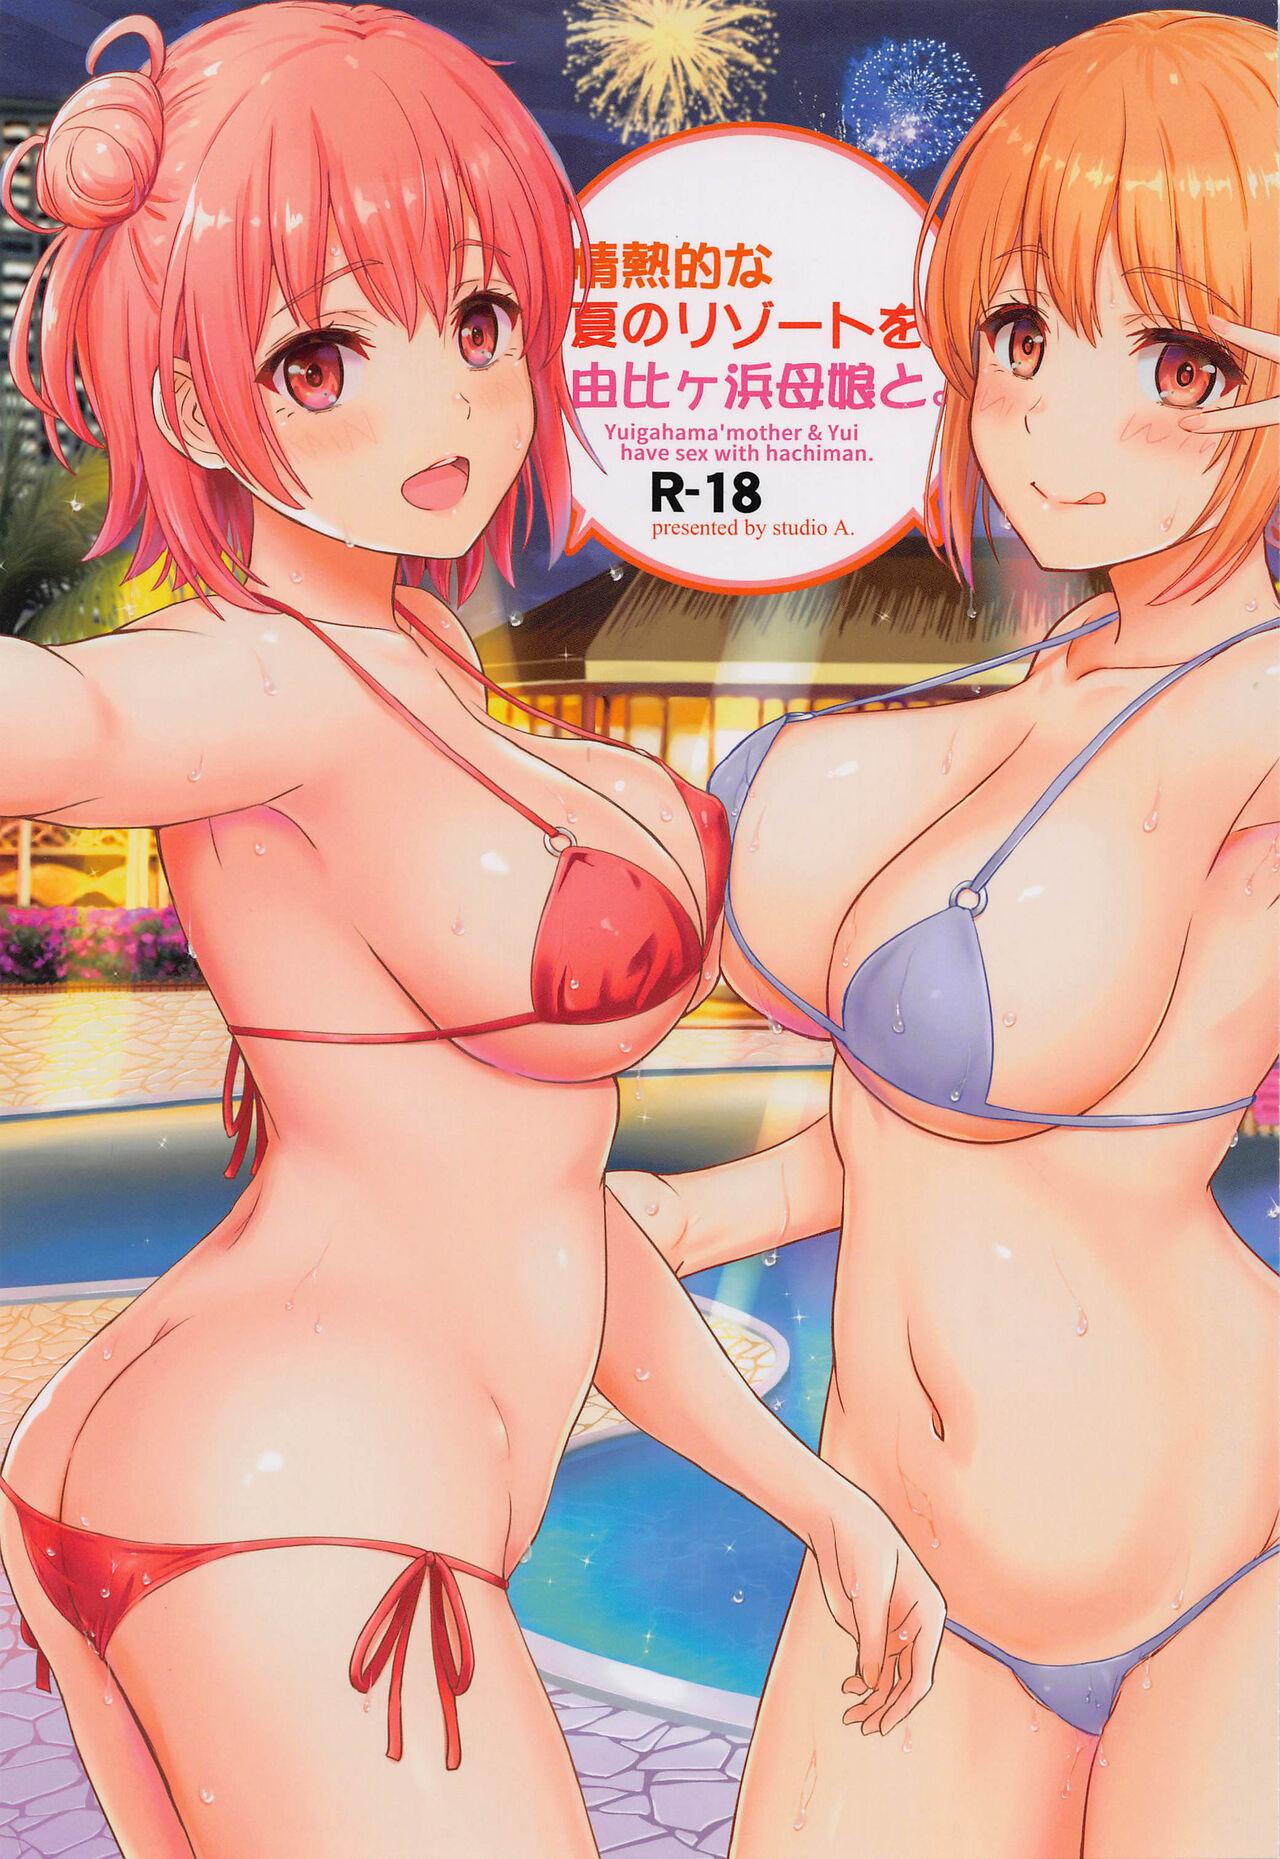 Porno Jounetsuteki na Natsu no Resort o Yuigahama Oyako to. - Yahari ore no seishun love come wa machigatteiru Women Sucking Dick - Picture 1